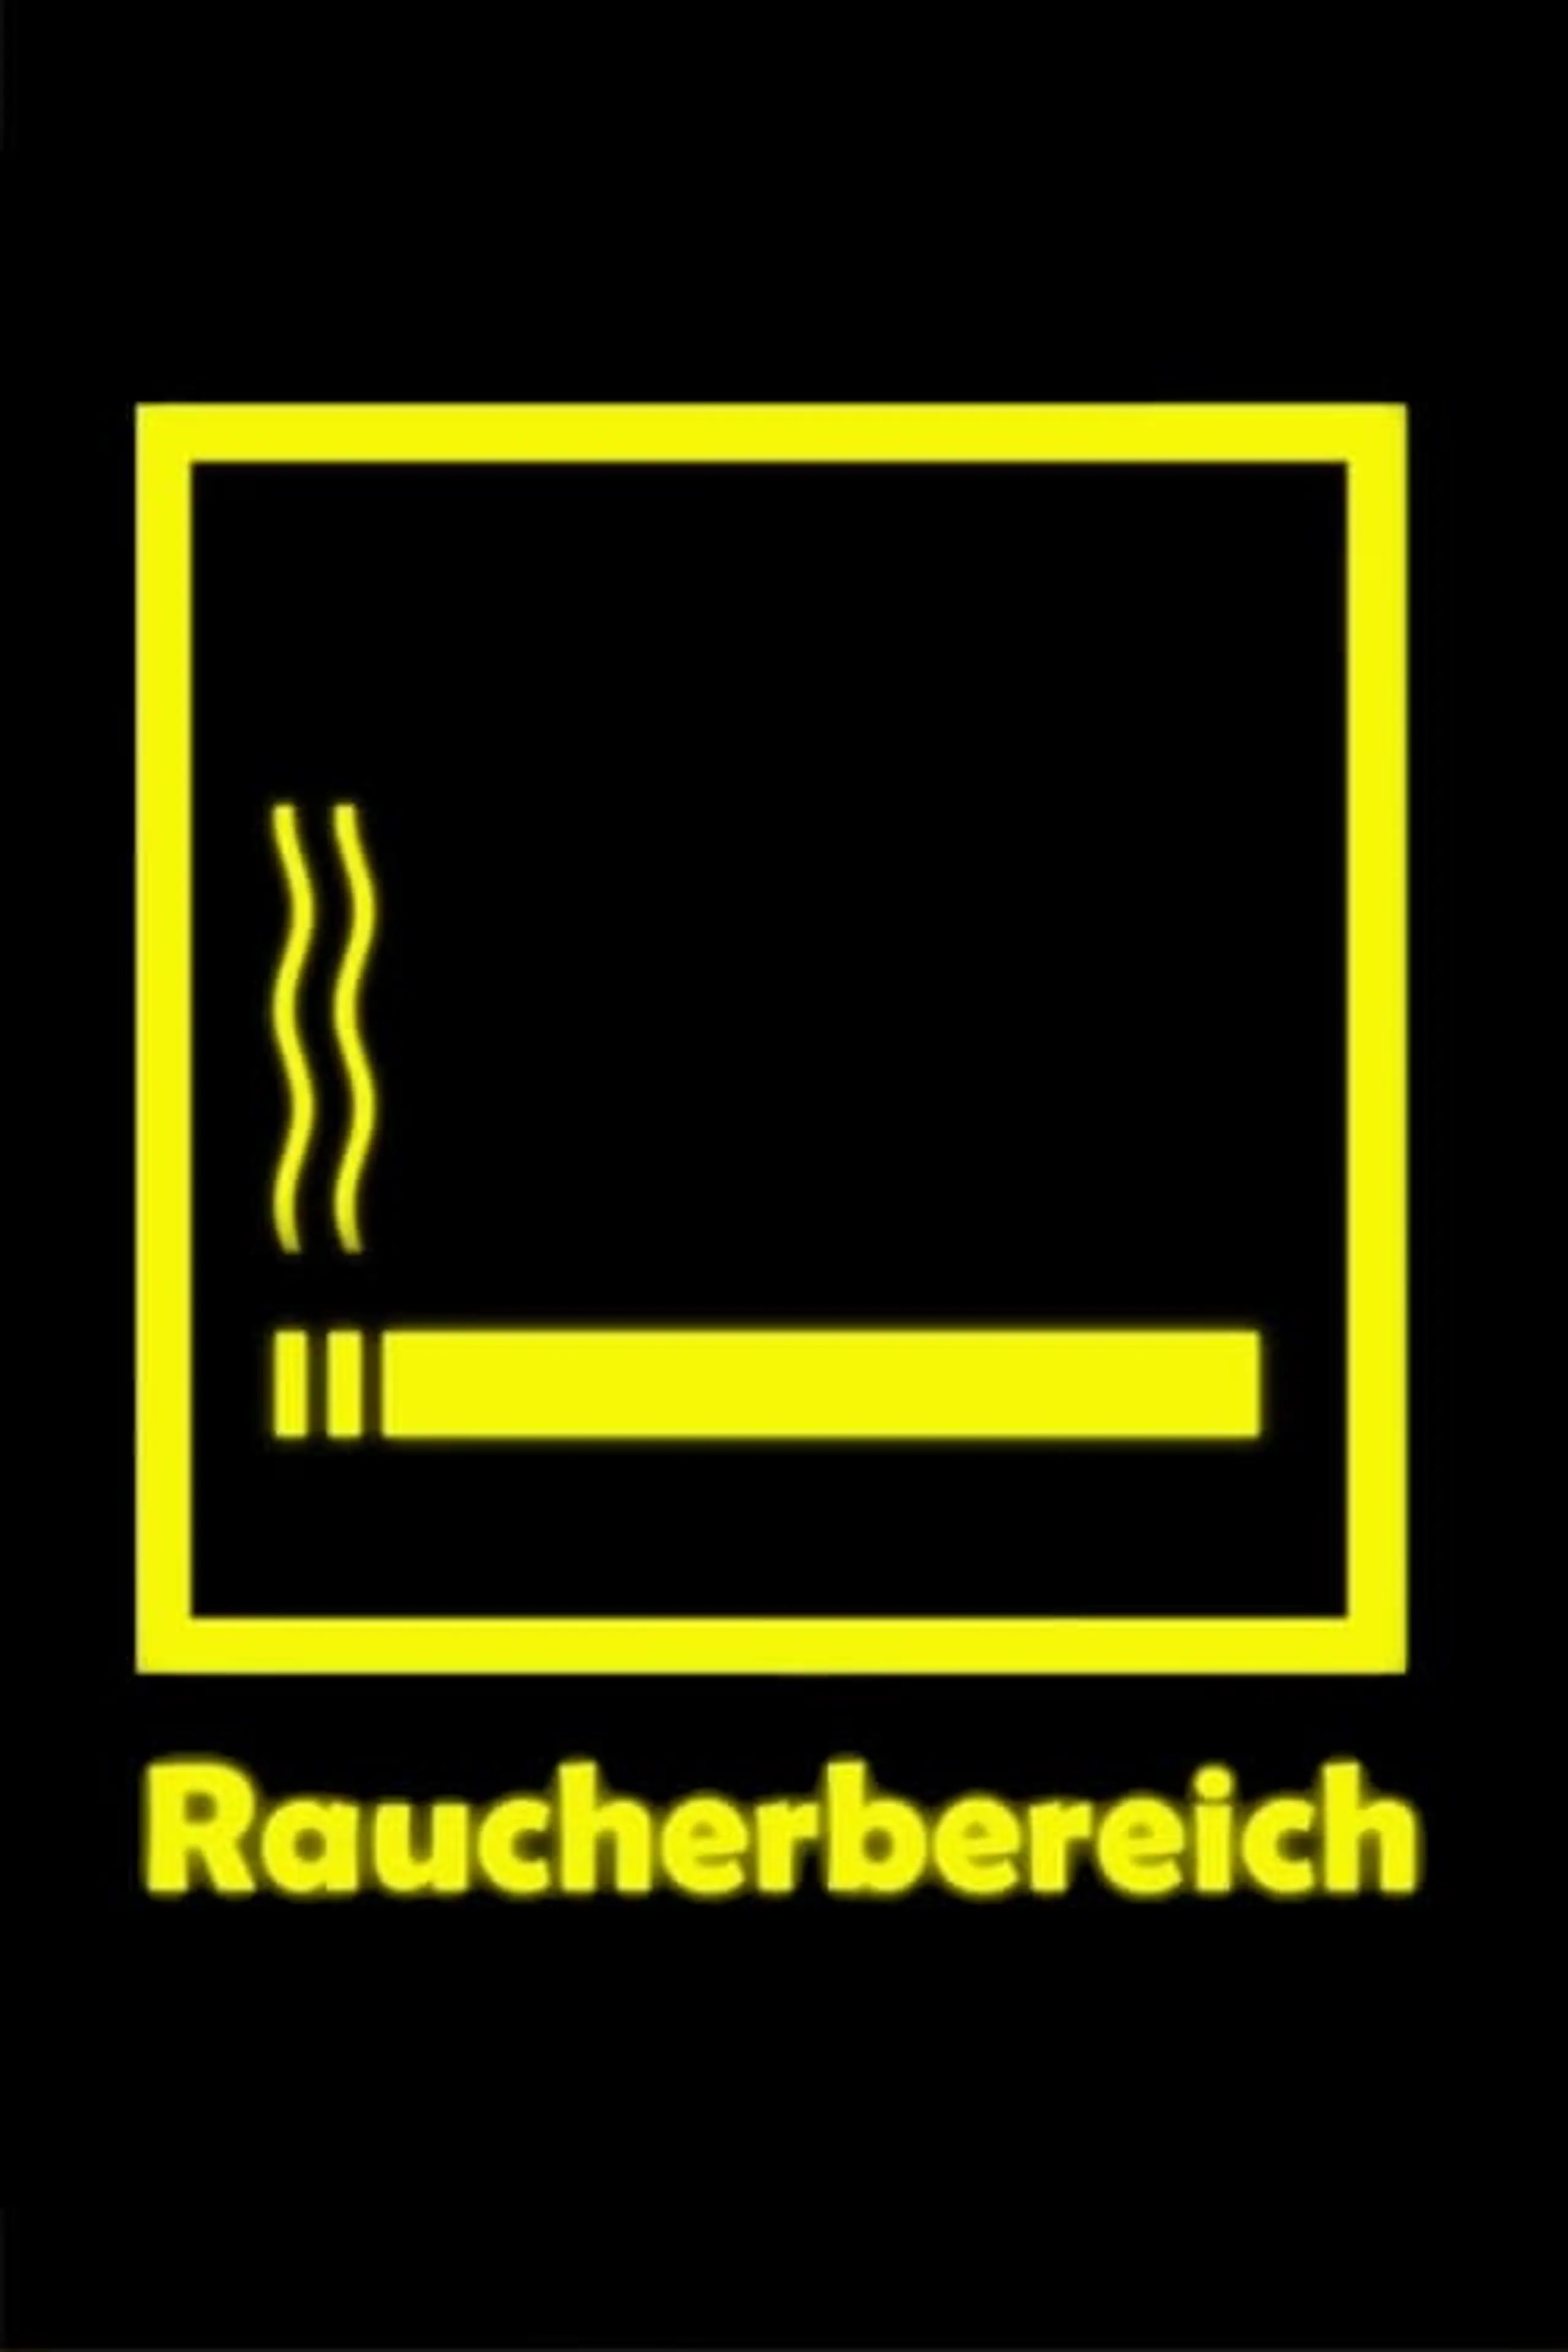 Raucherbereich - Social